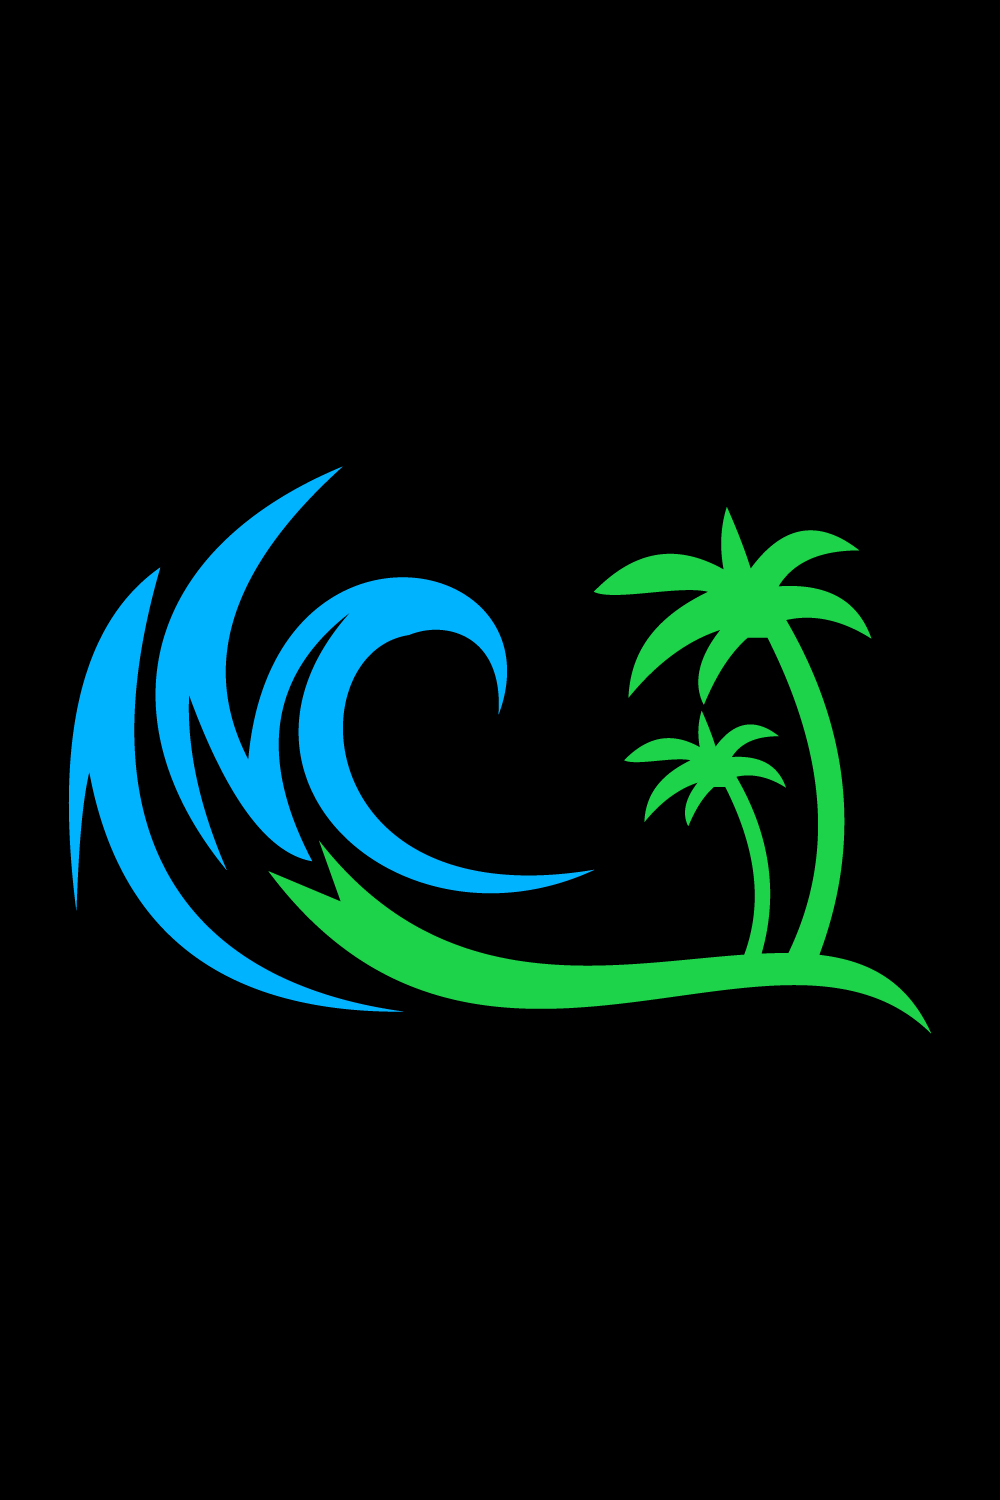 Creative Beach logo design, Vector design concept pinterest preview image.